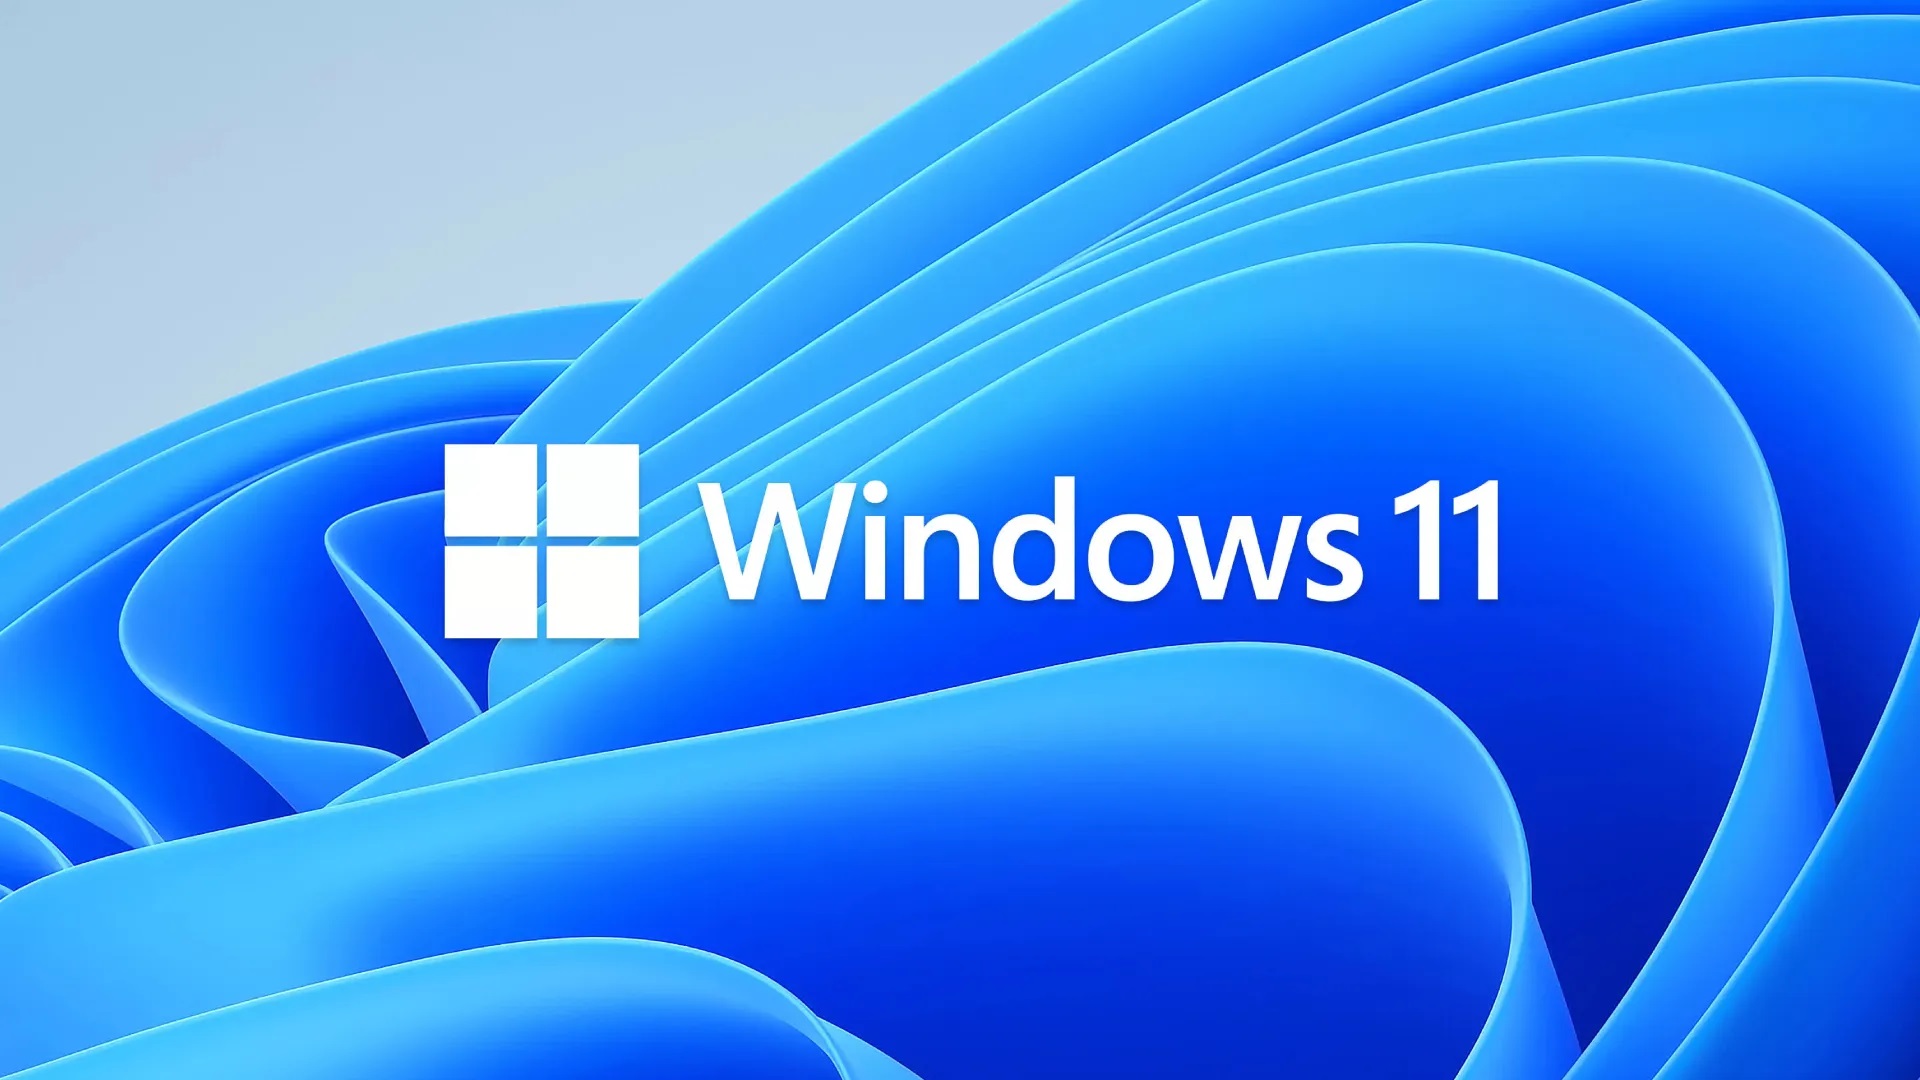 Cảnh báo: Microsoft xác nhận update mới của Windows 11 làm giảm hiệu suất chơi game